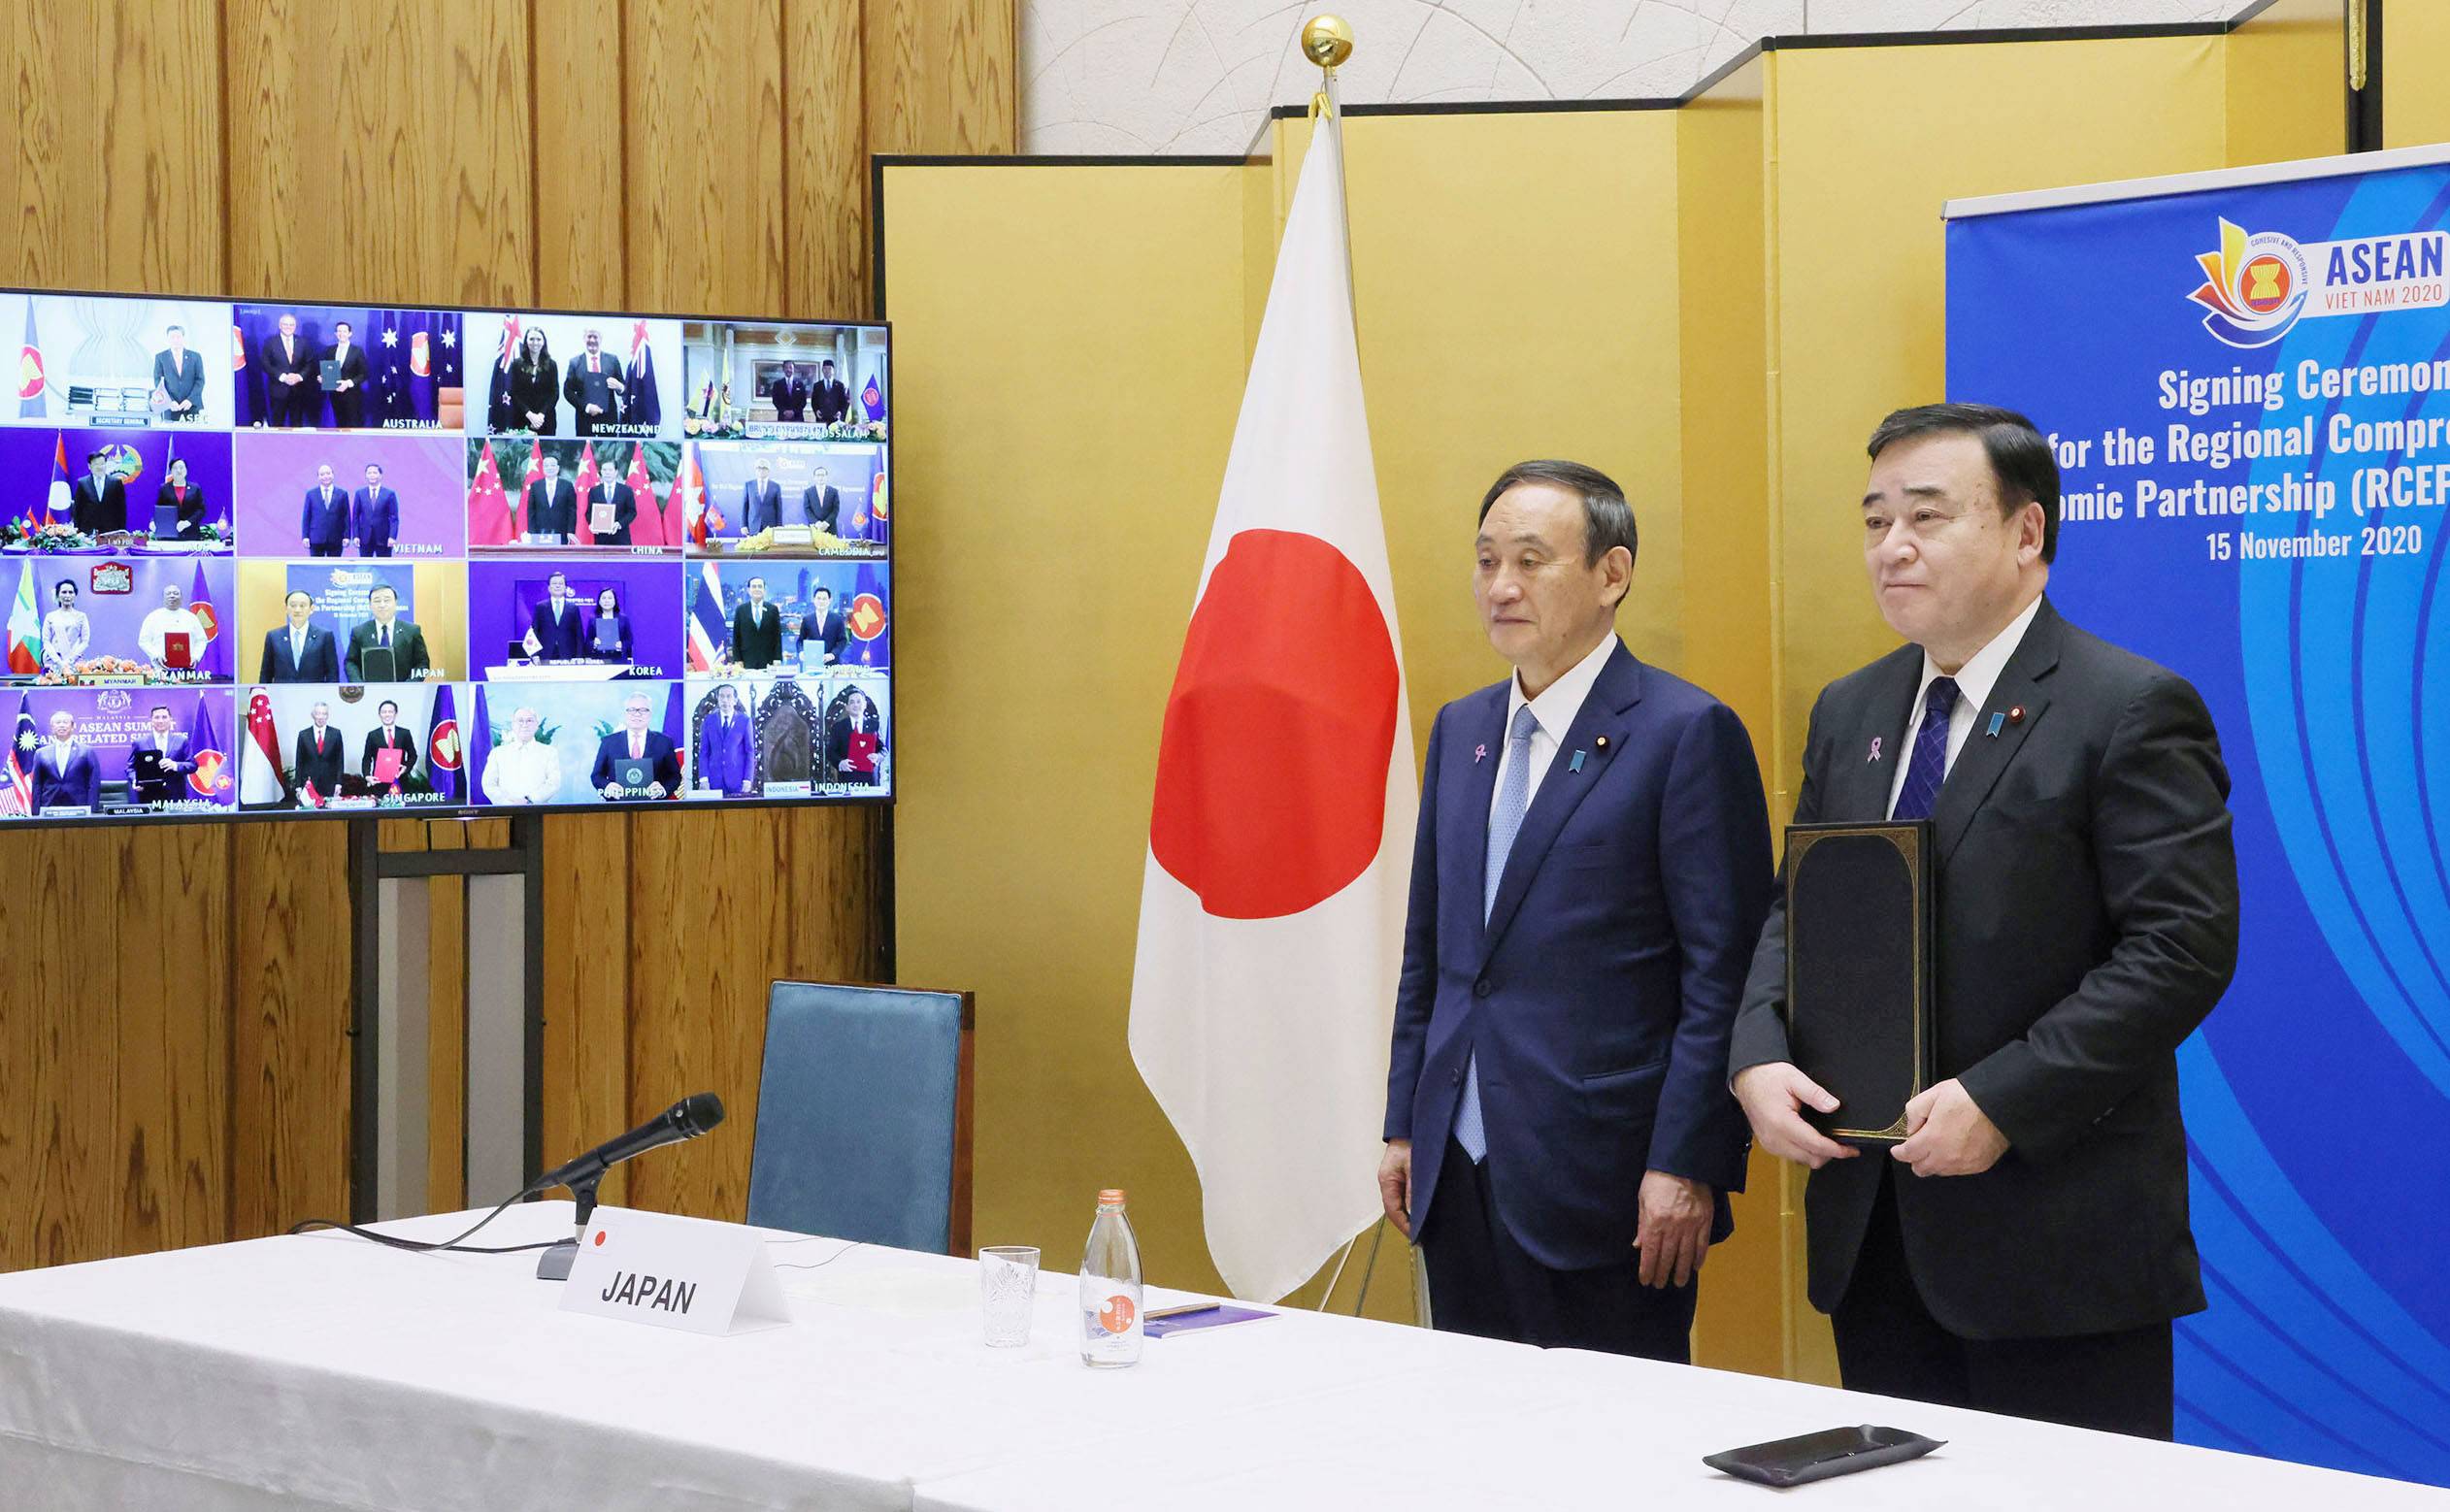 जापान, चीन र एसियाका अन्य १३ मुलुकले गरे अहिलेसम्मकै ठूलो व्यापार सम्झौतामा हस्ताक्षर